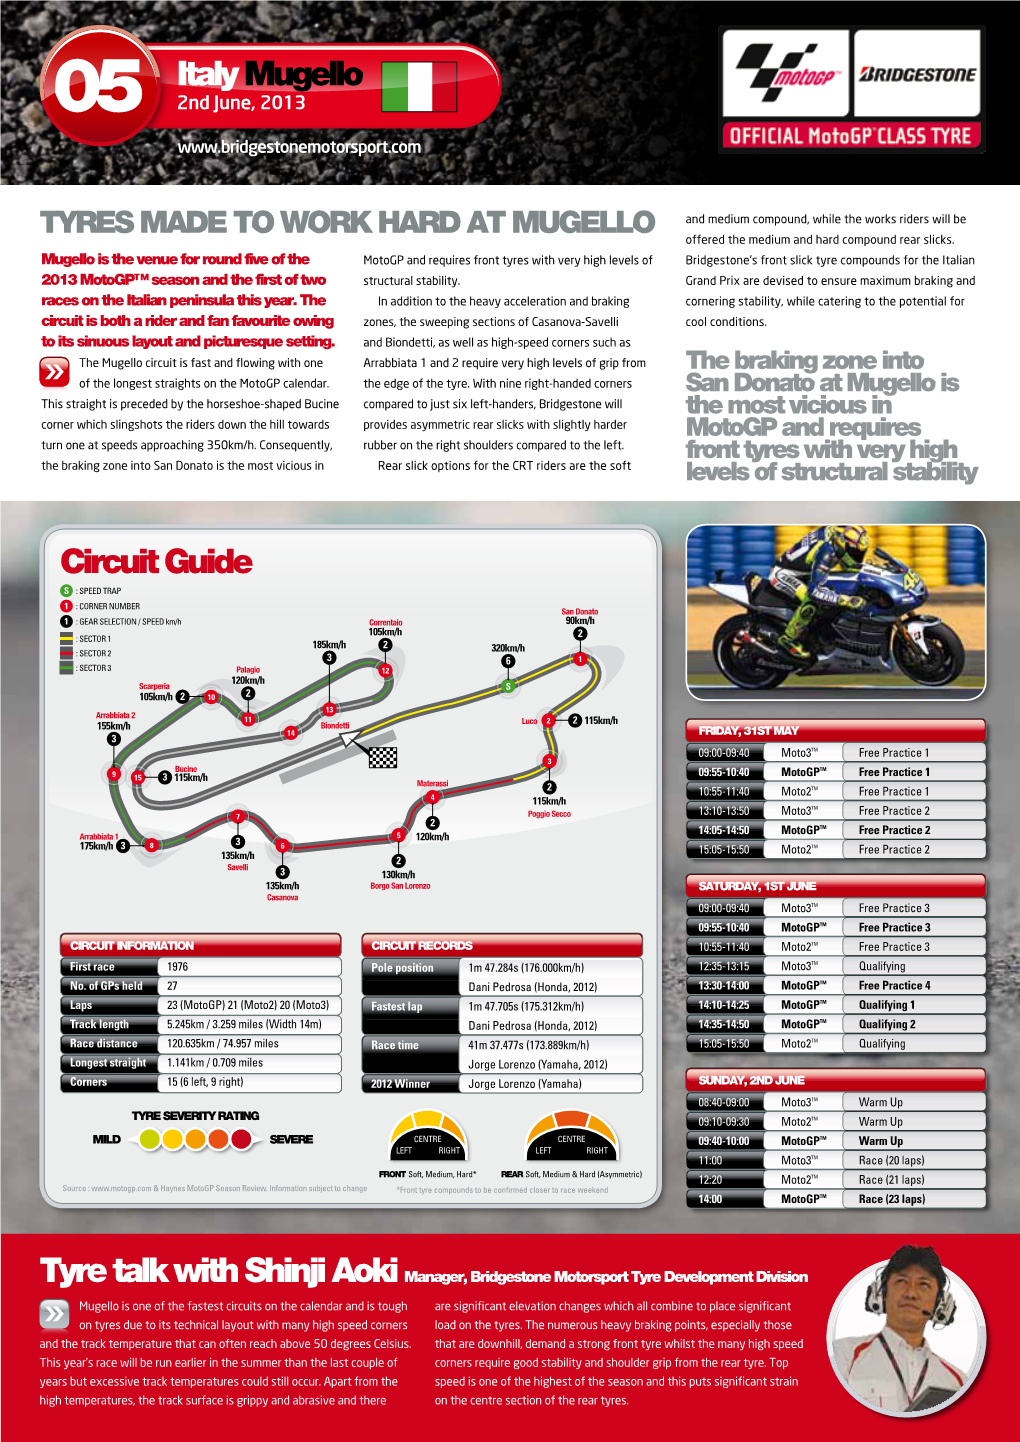 Italy Mugello Circuit Guide